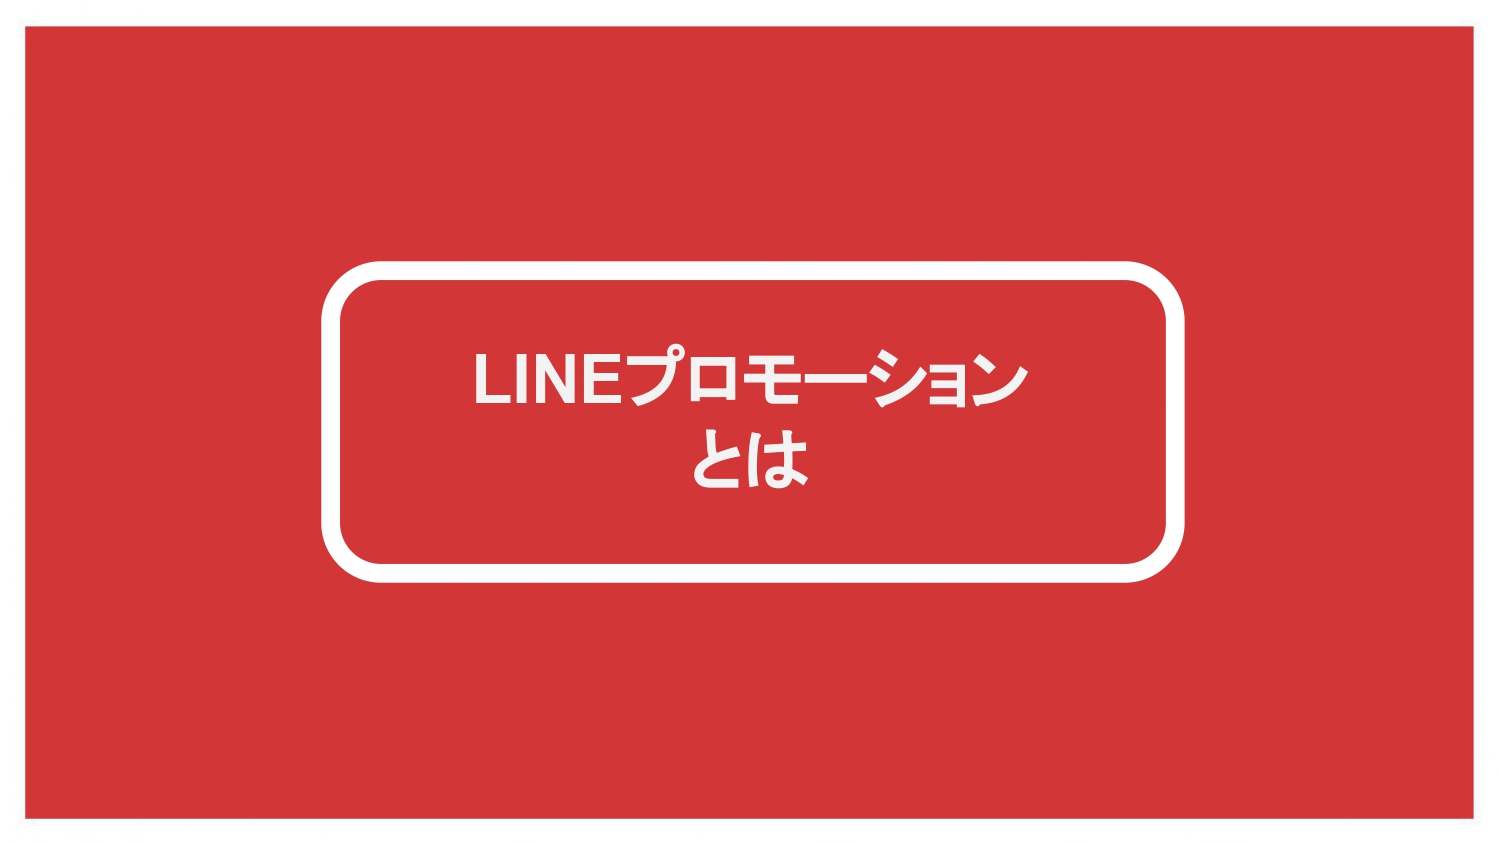 LINEプロモーション大全【青笹寛史】